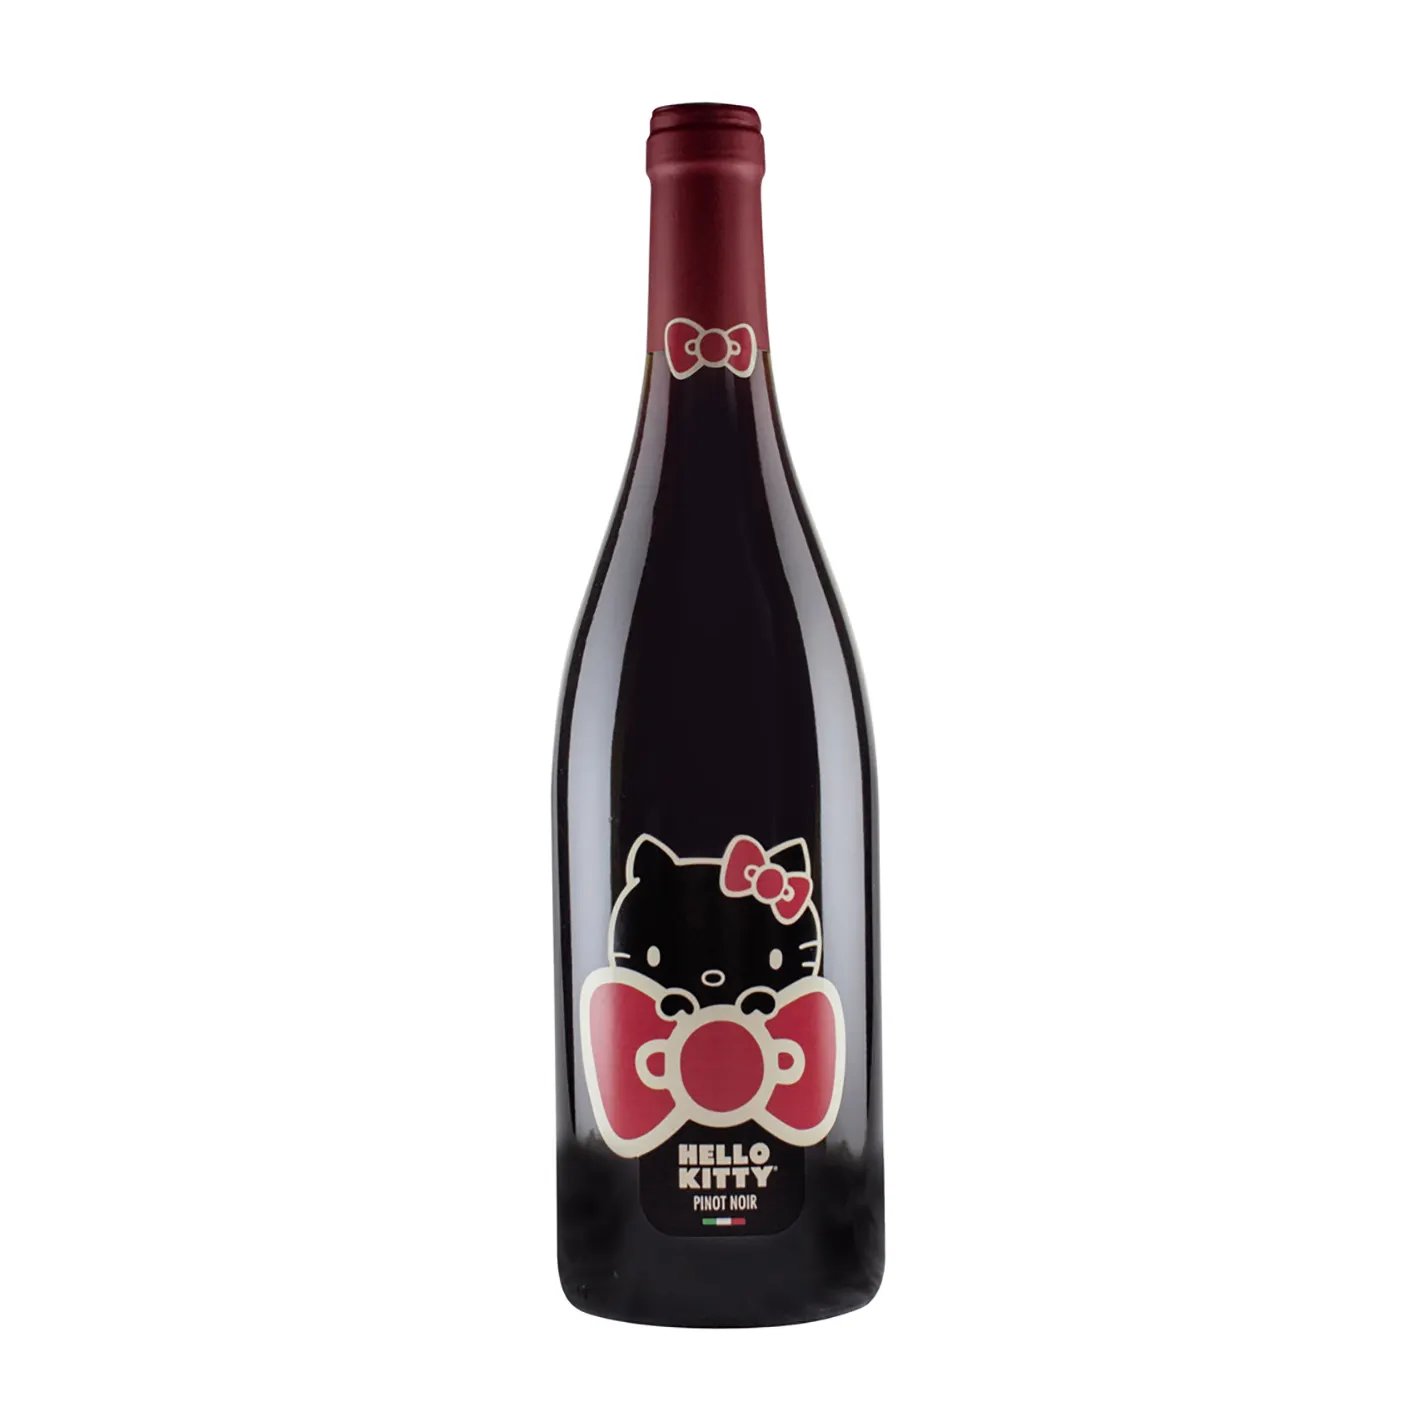 איטלקי באיכות גבוהה אדום יין פינו נואר-רשמי יין-750 ml בקבוק-הטוב ביותר אלכוהוליים משקאות